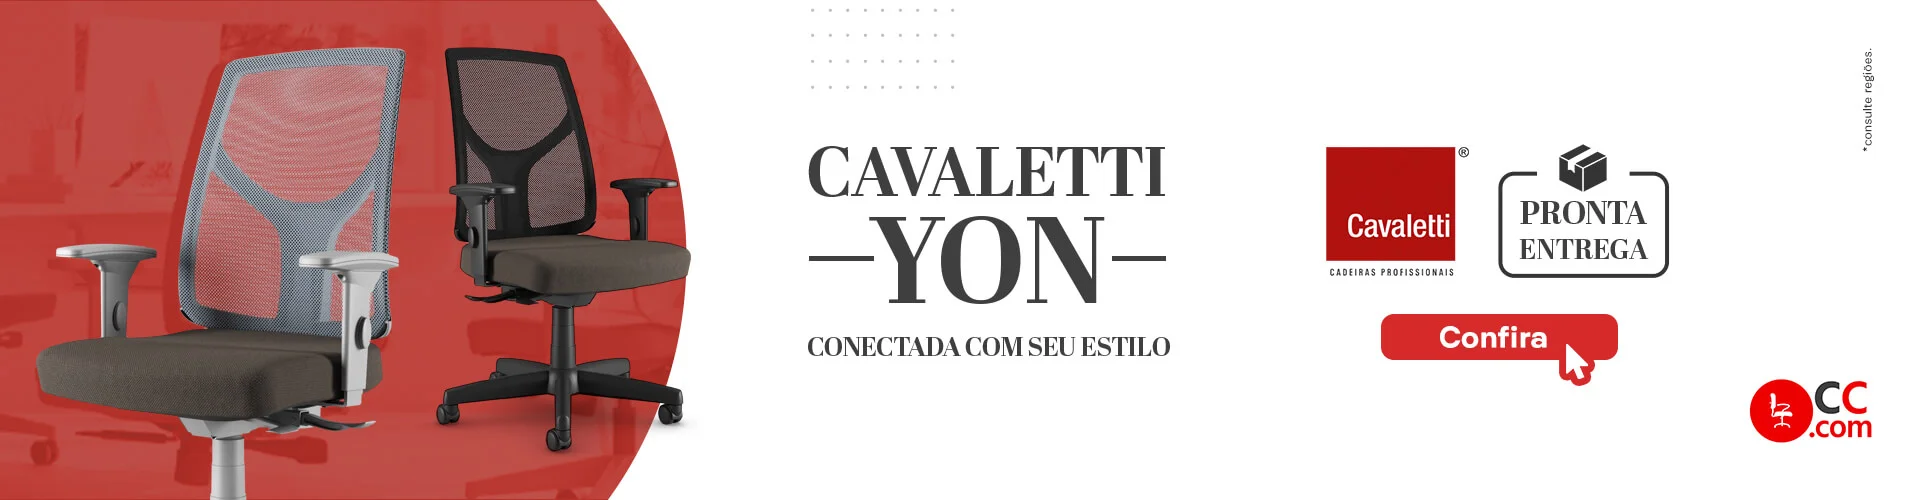 Cavaletti Yon